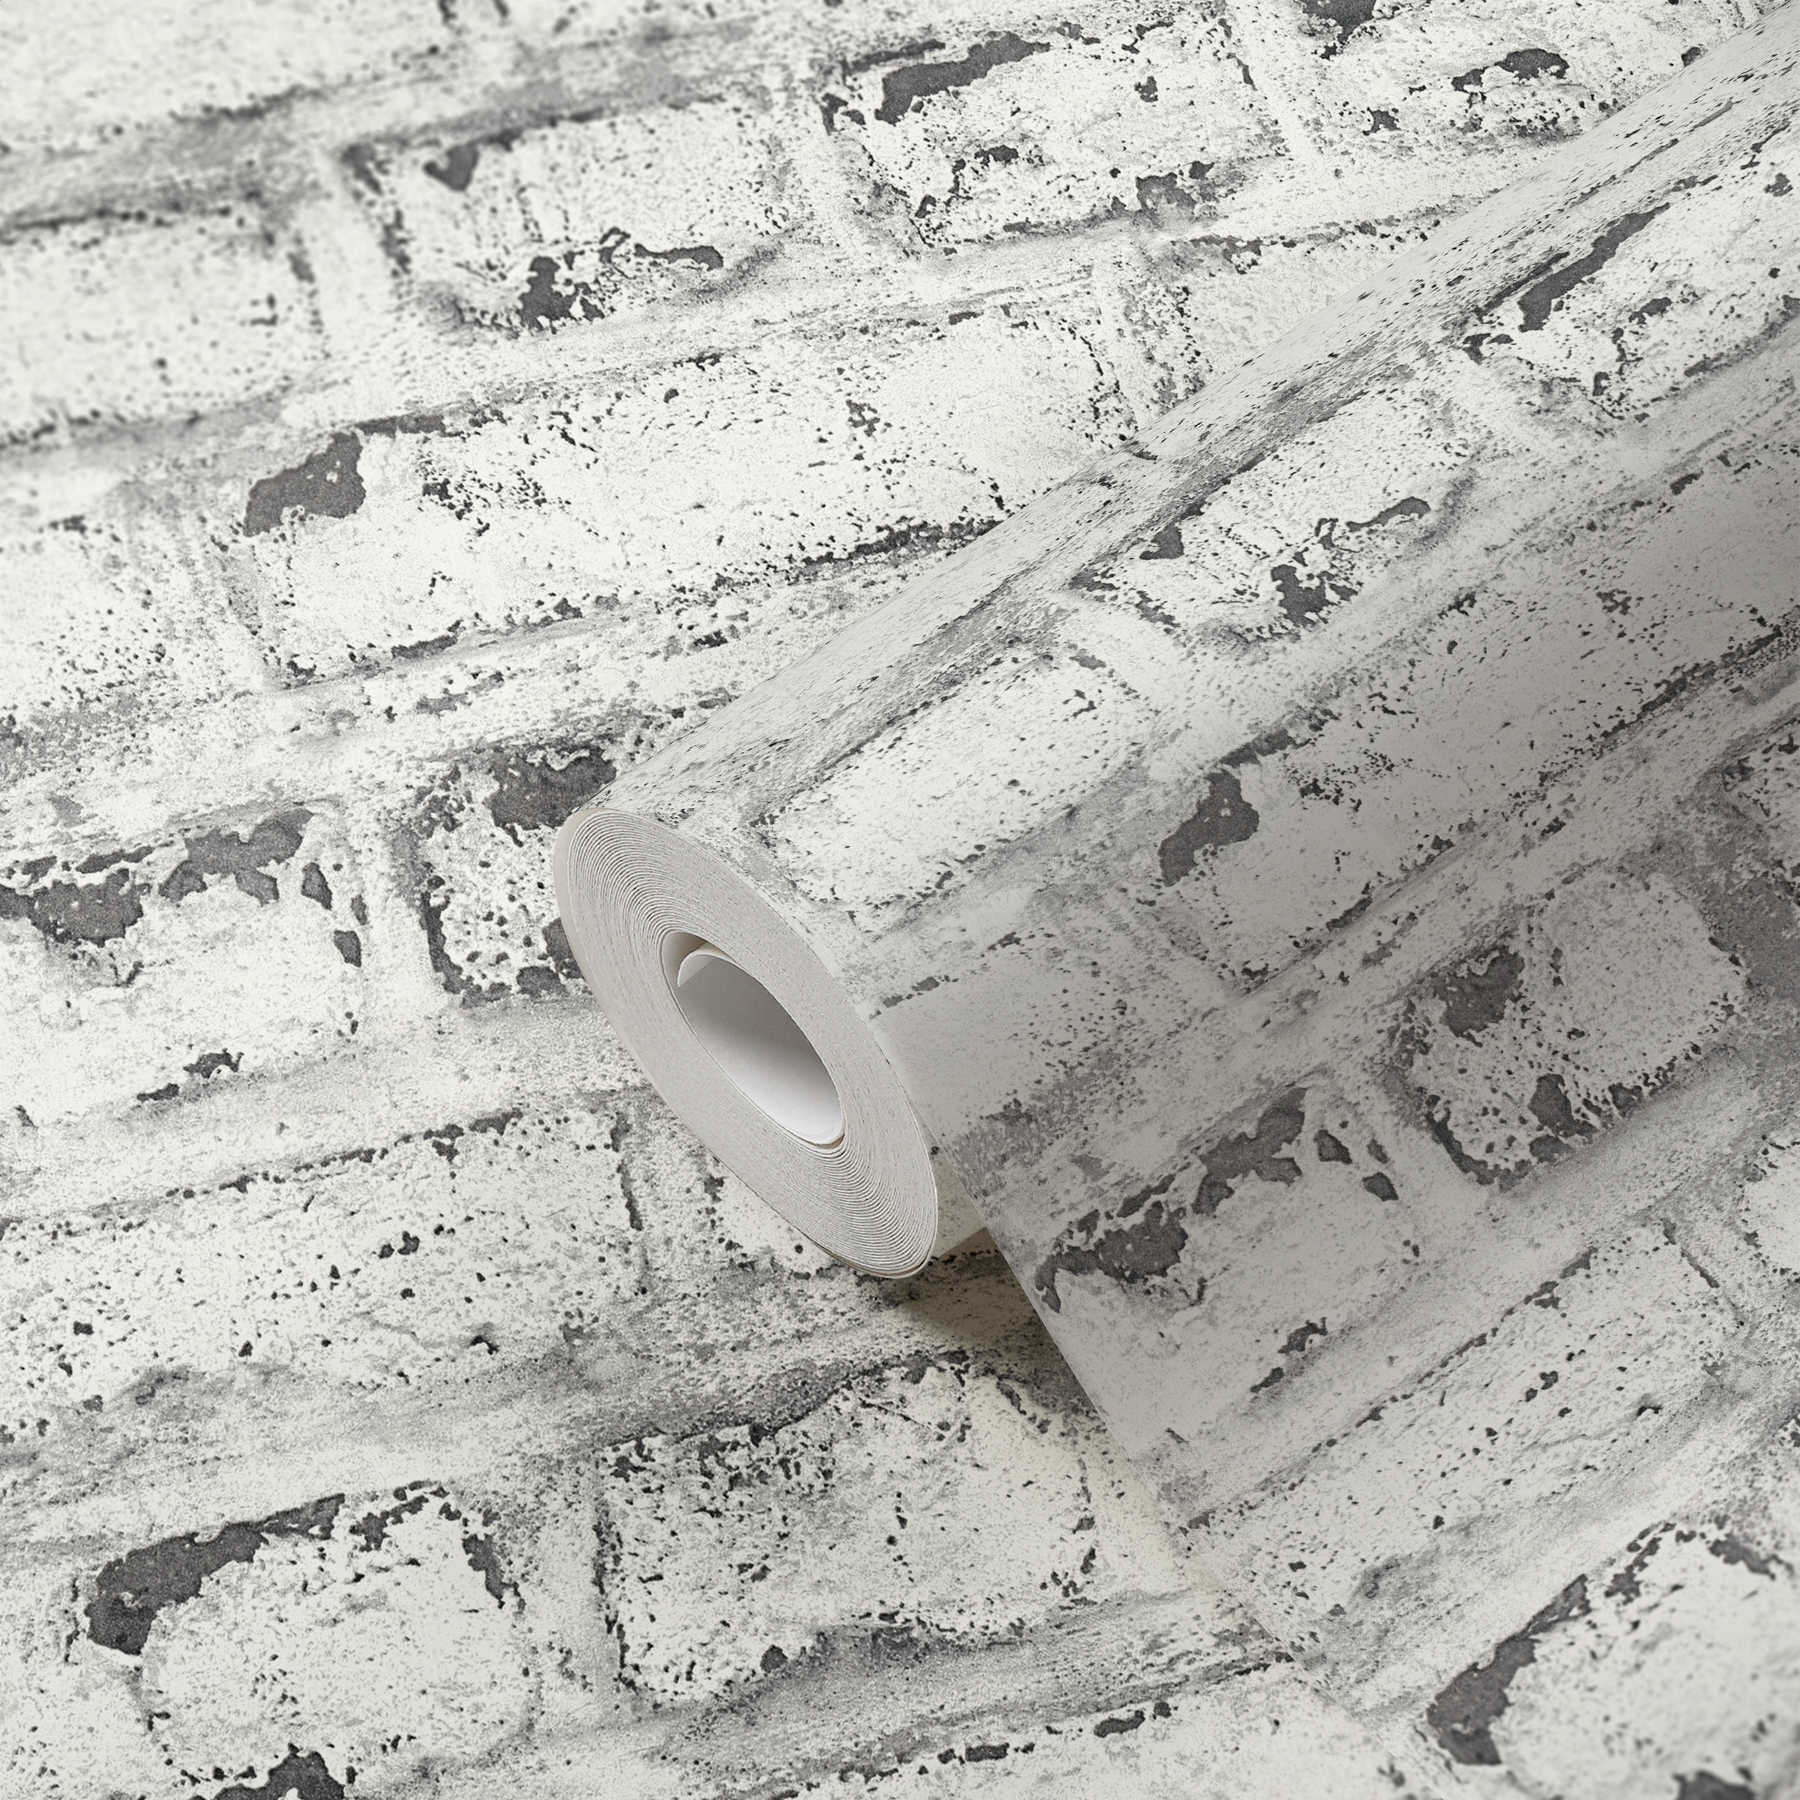             Papier peint pierre mur de briques blanc, style industriel - blanc, gris
        